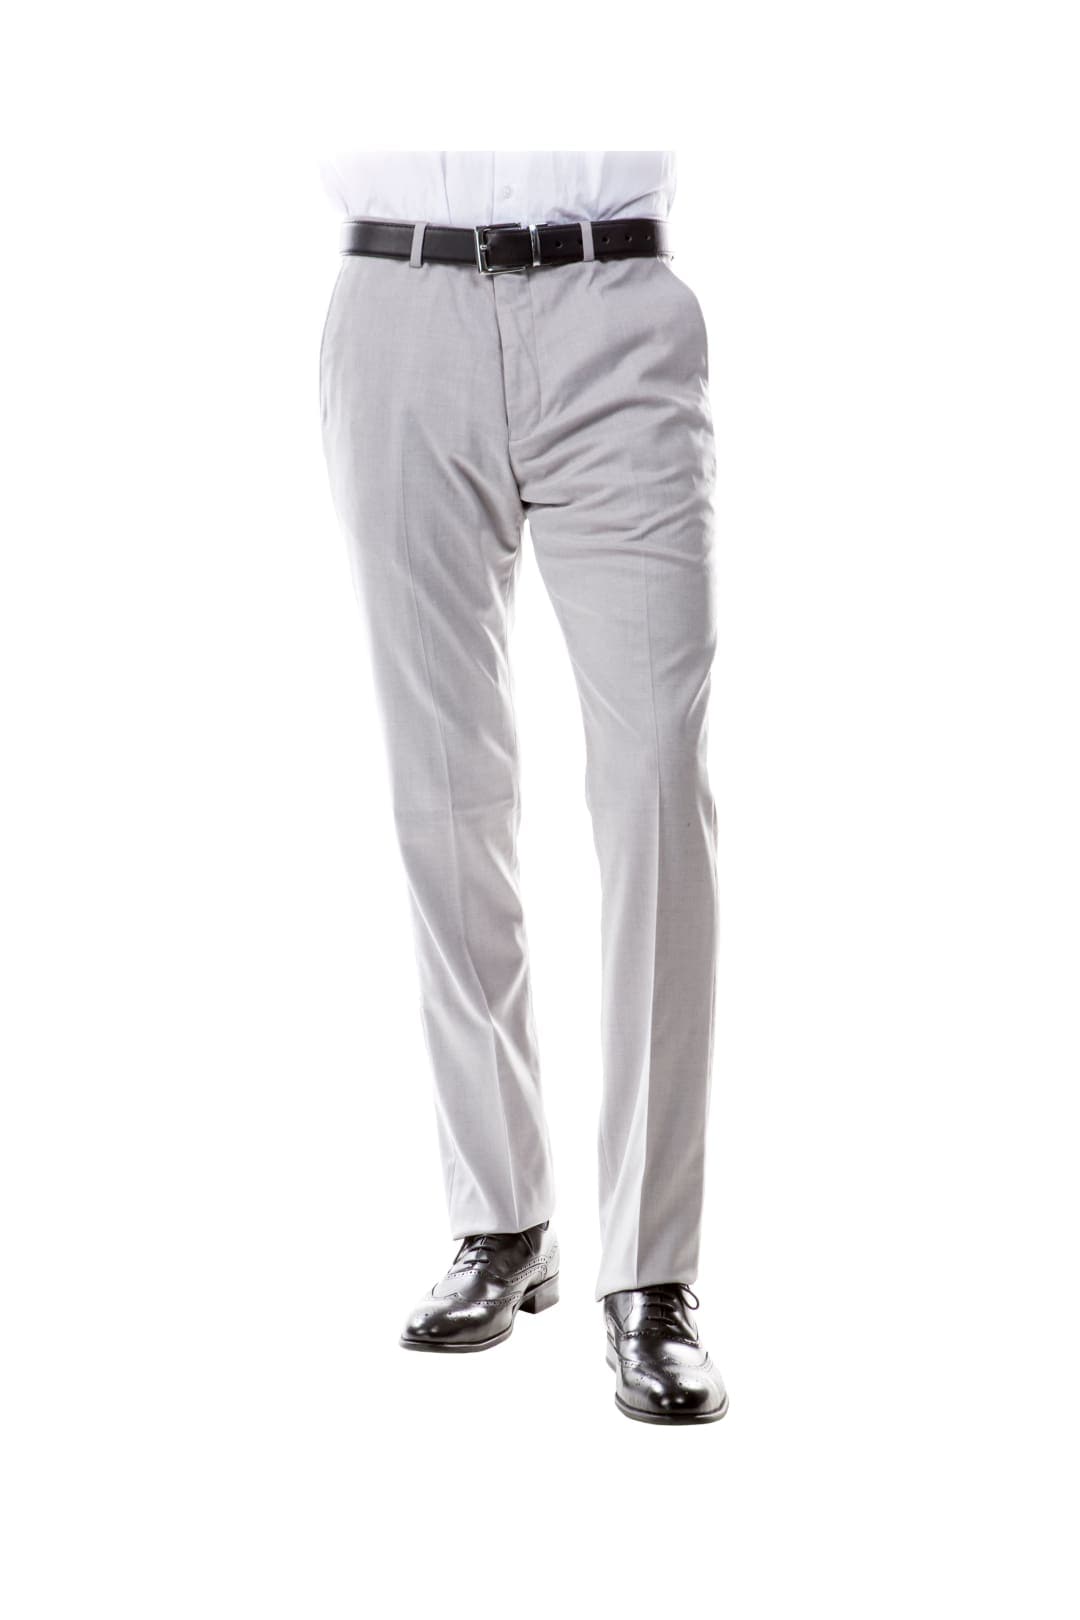 Light Grey Zegarie Suit Separates Solid Men’s Vests For Men MP346-04 - Light Grey / 28W / MP346-04 - Suit-separates